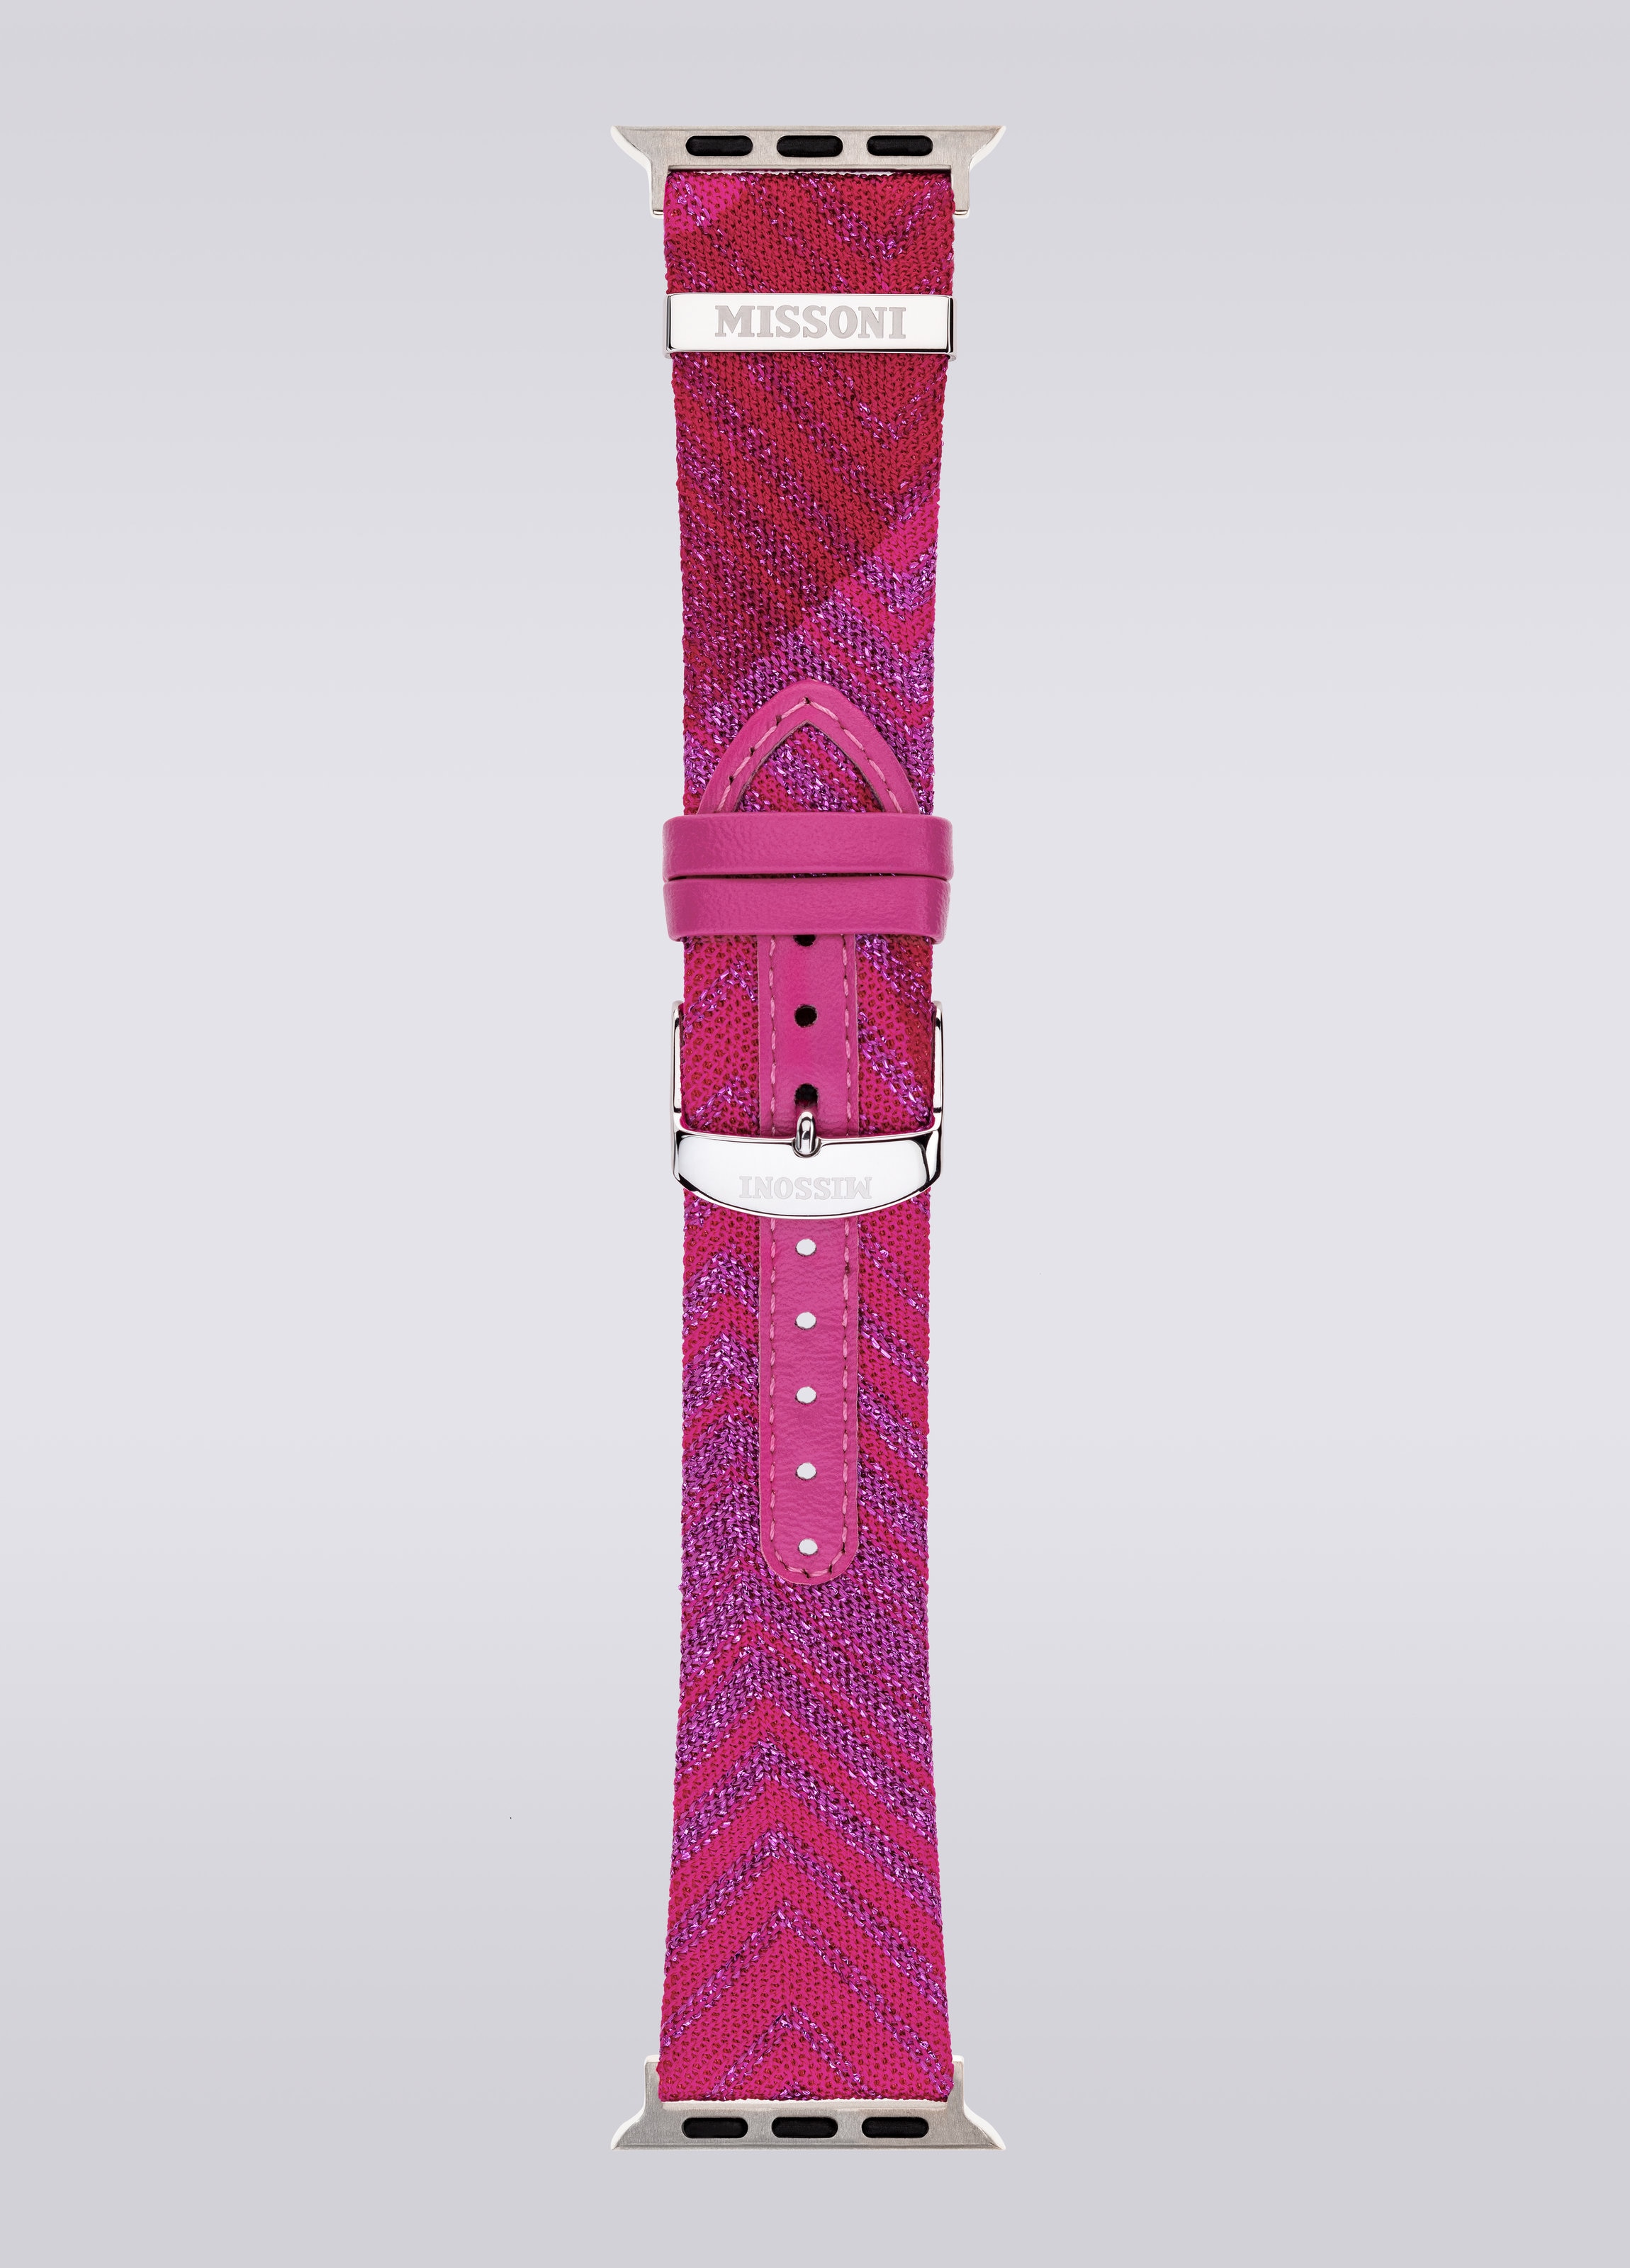 Missoniファブリック 22mm Apple watch対応ストラップ, ピンク   - 2